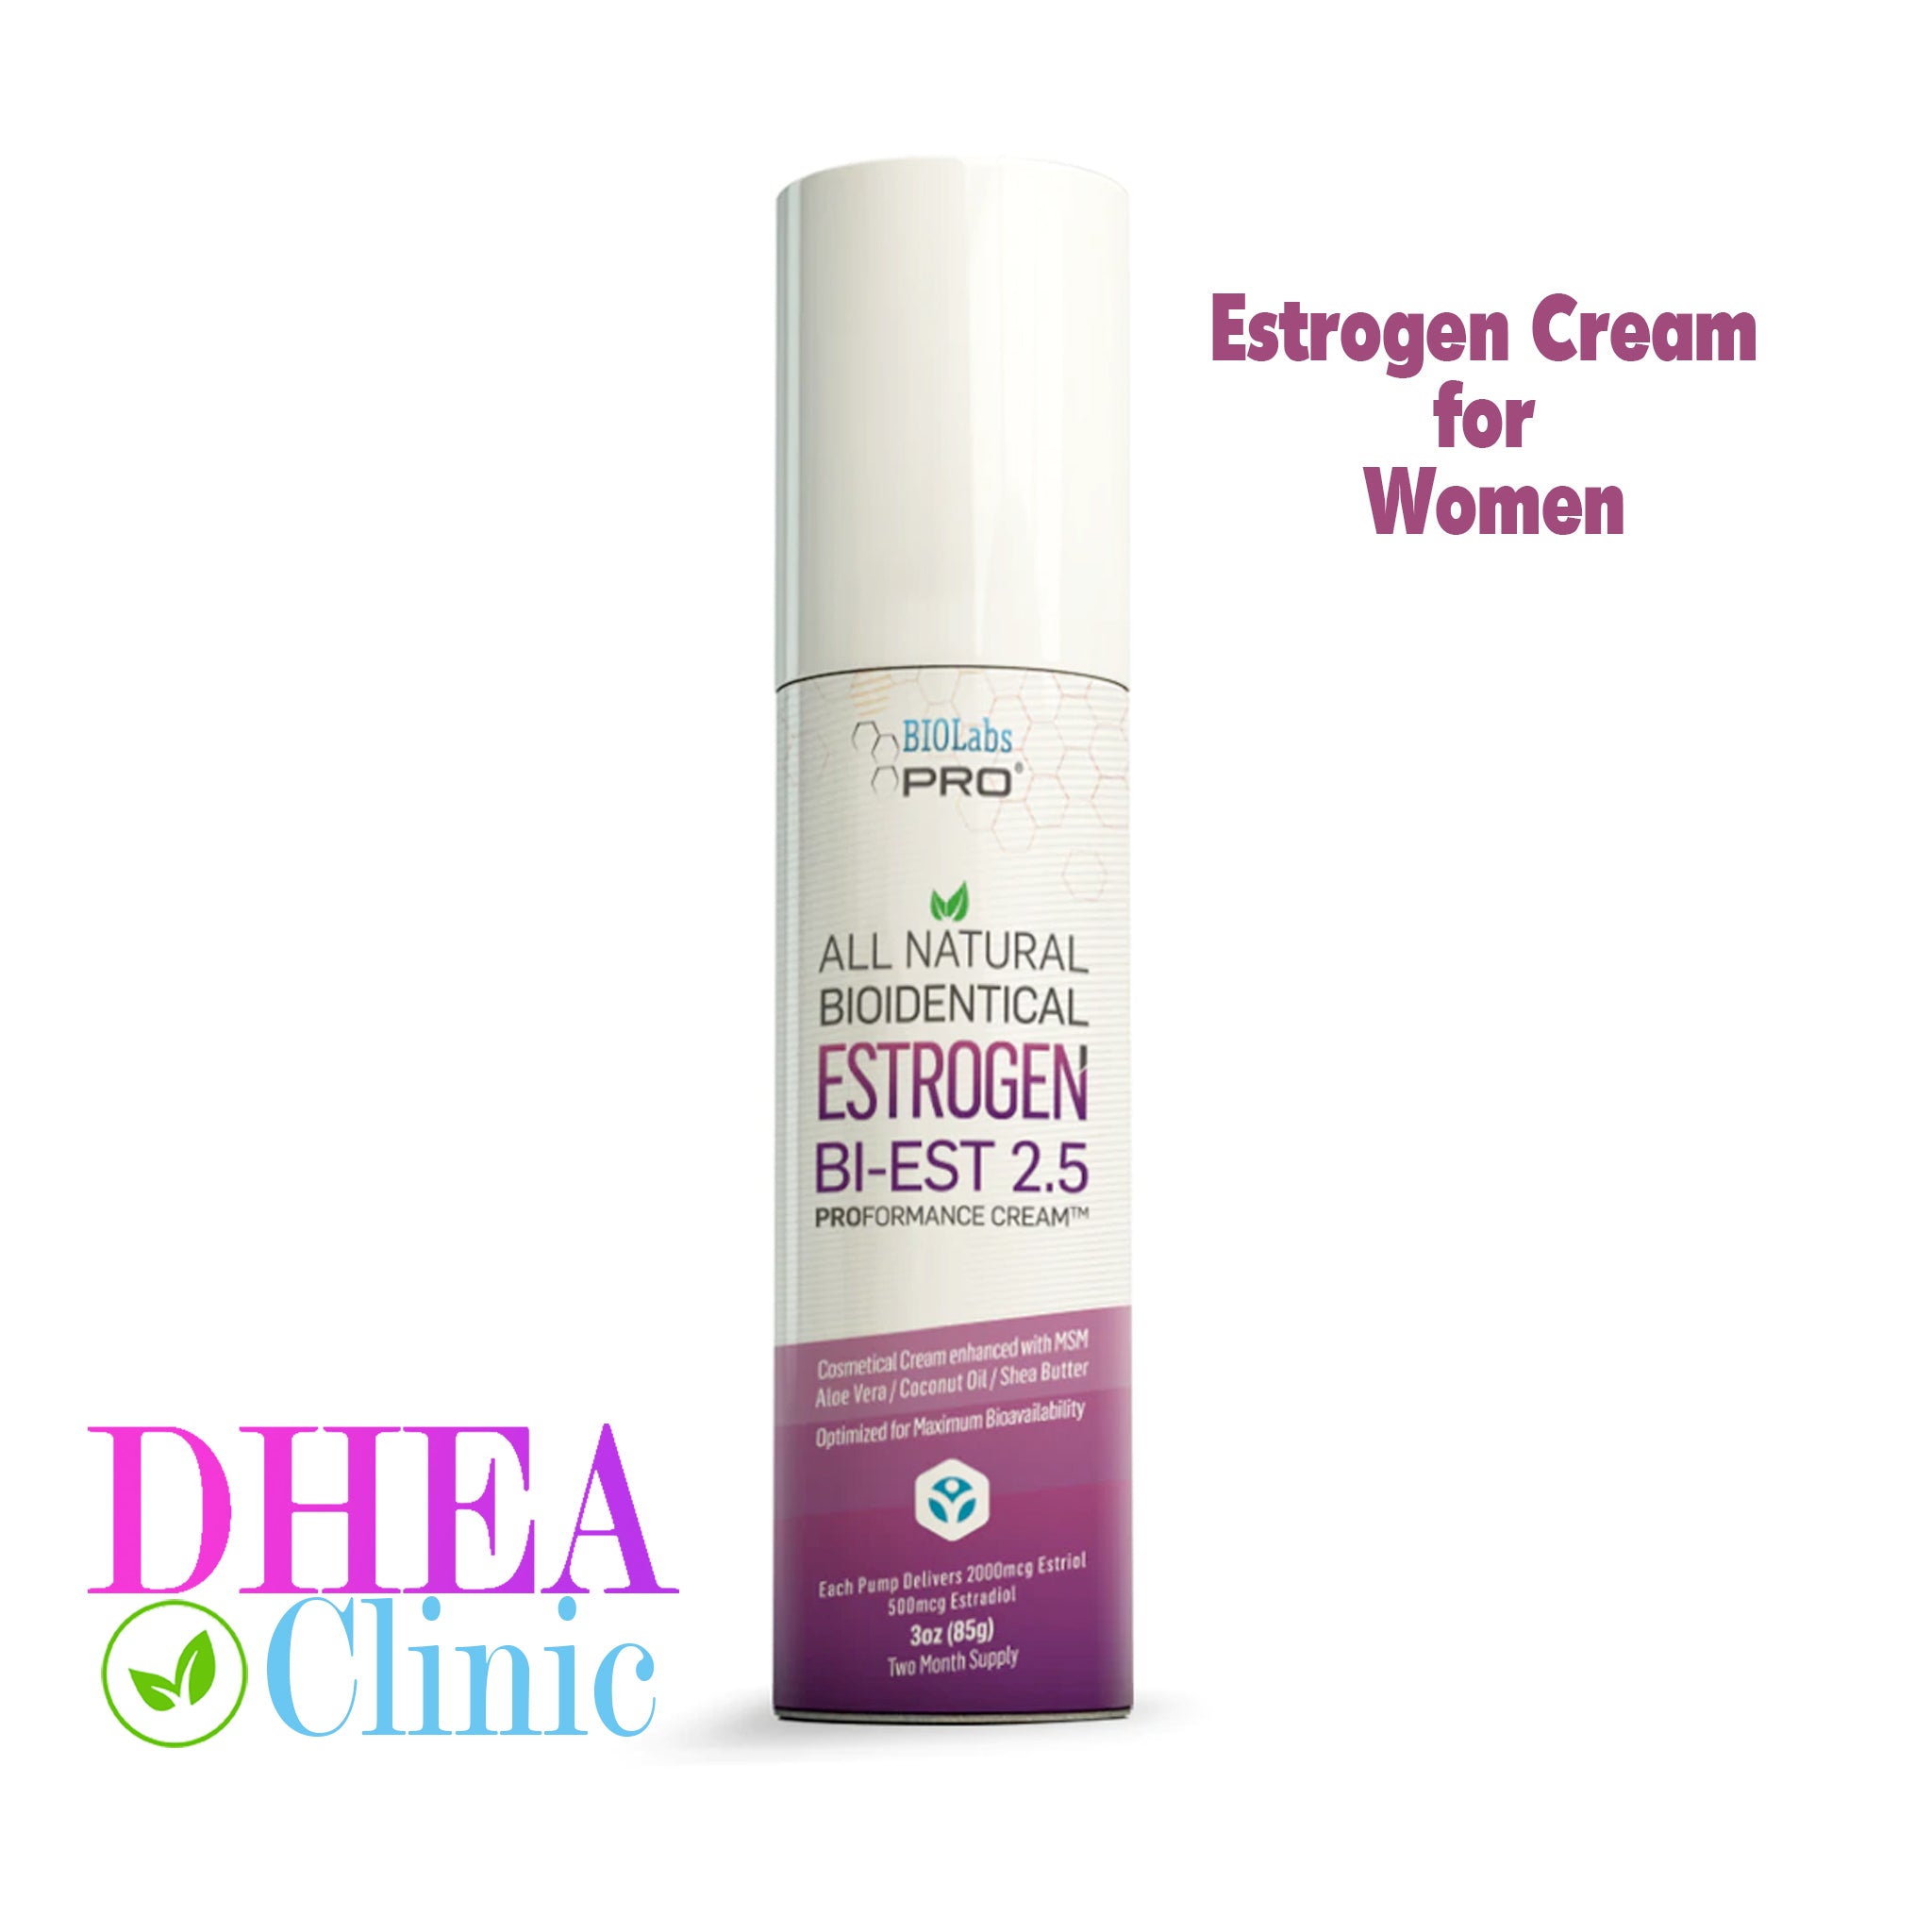 Estrogen Cream for Menopause, Vaginal Dryness & More